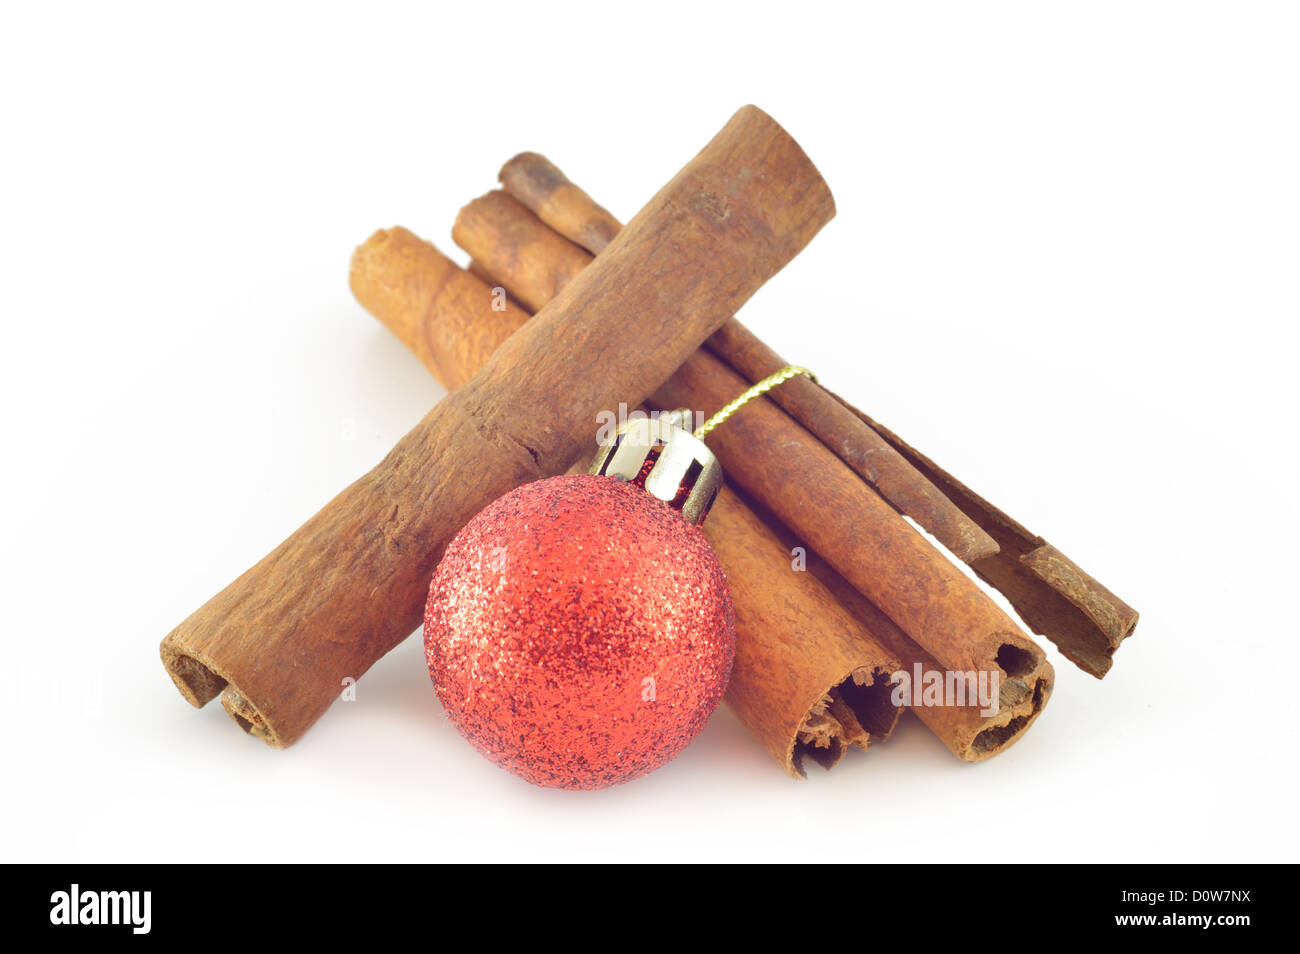 Cinnamon bark (cinnamon) with Christmas ball close-up Stock Photo